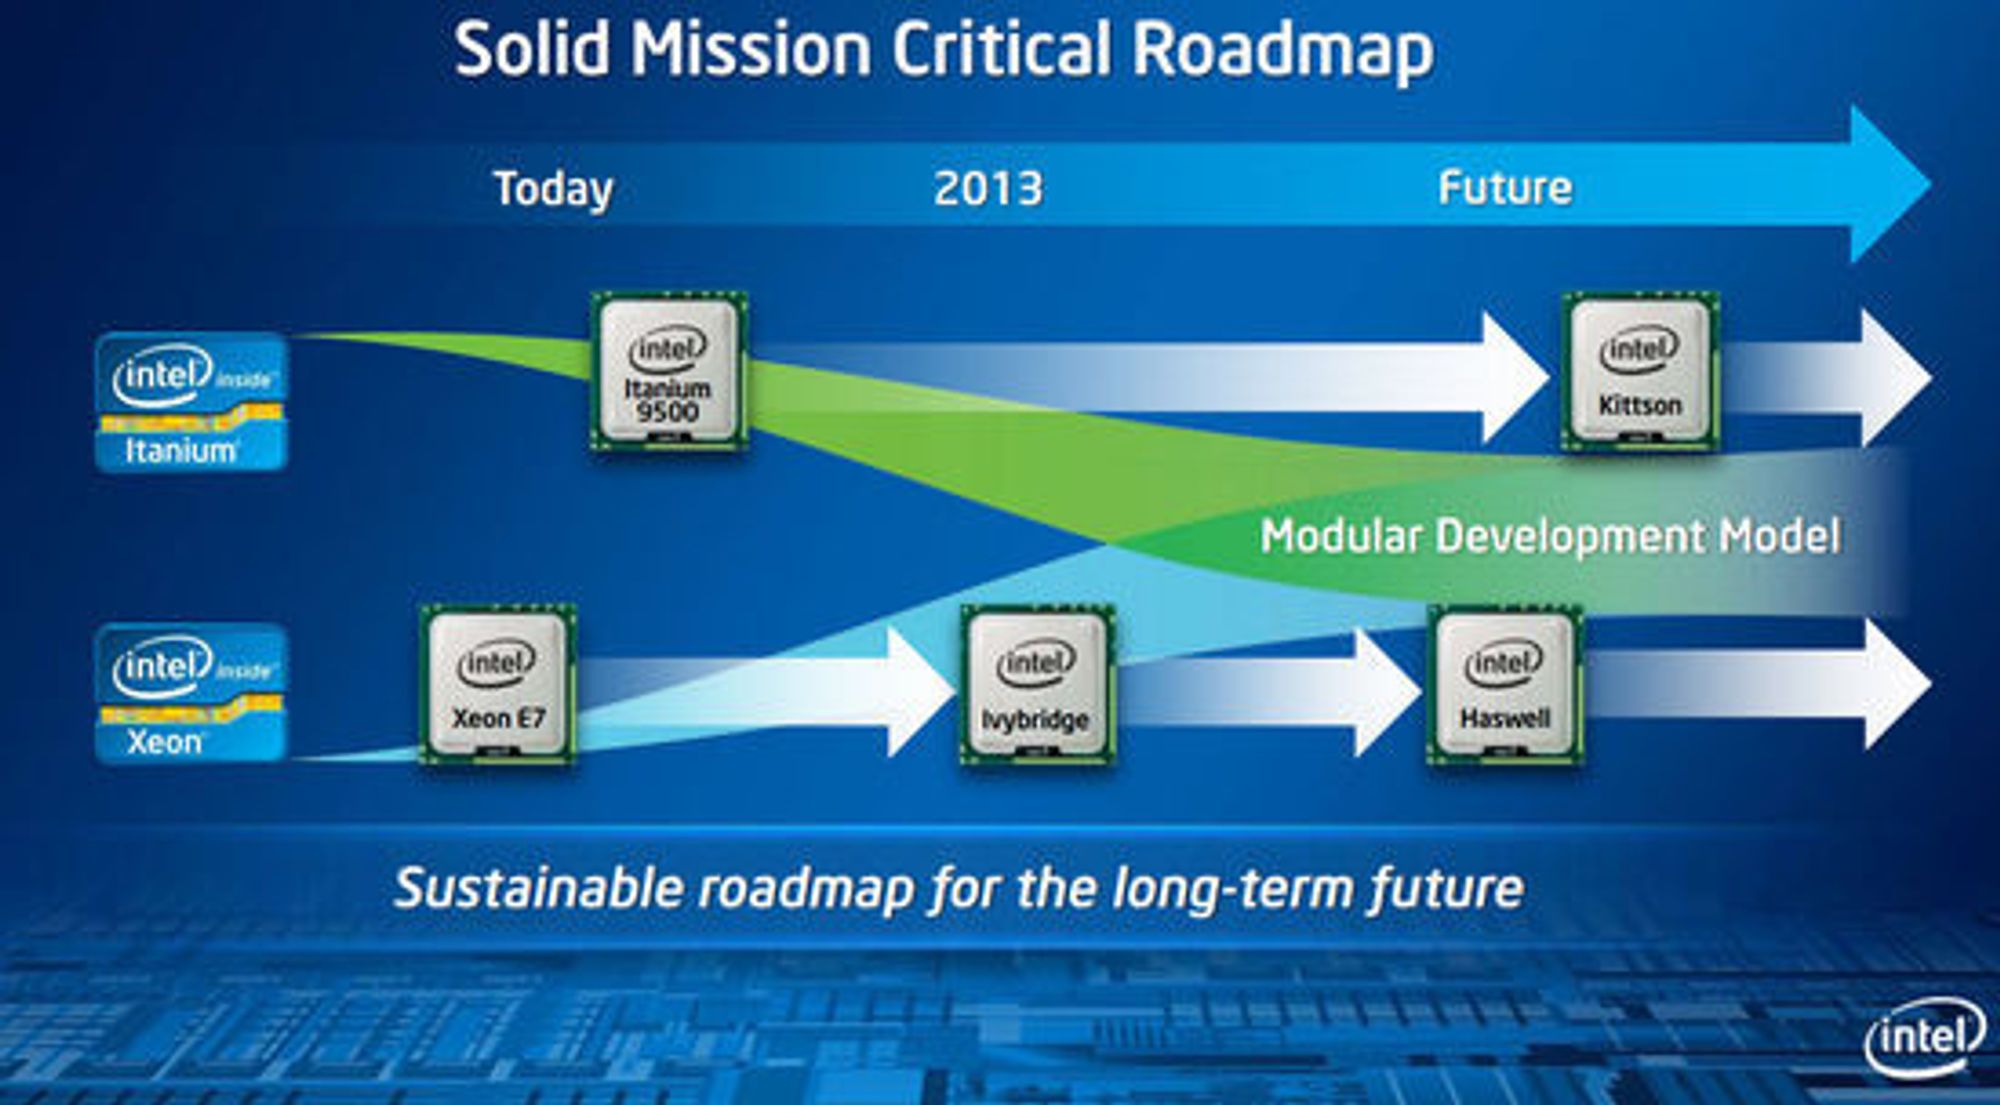 Mange av komponentene i og rundt Itanium og Xeon E7 vil smelte sammen i framtiden.